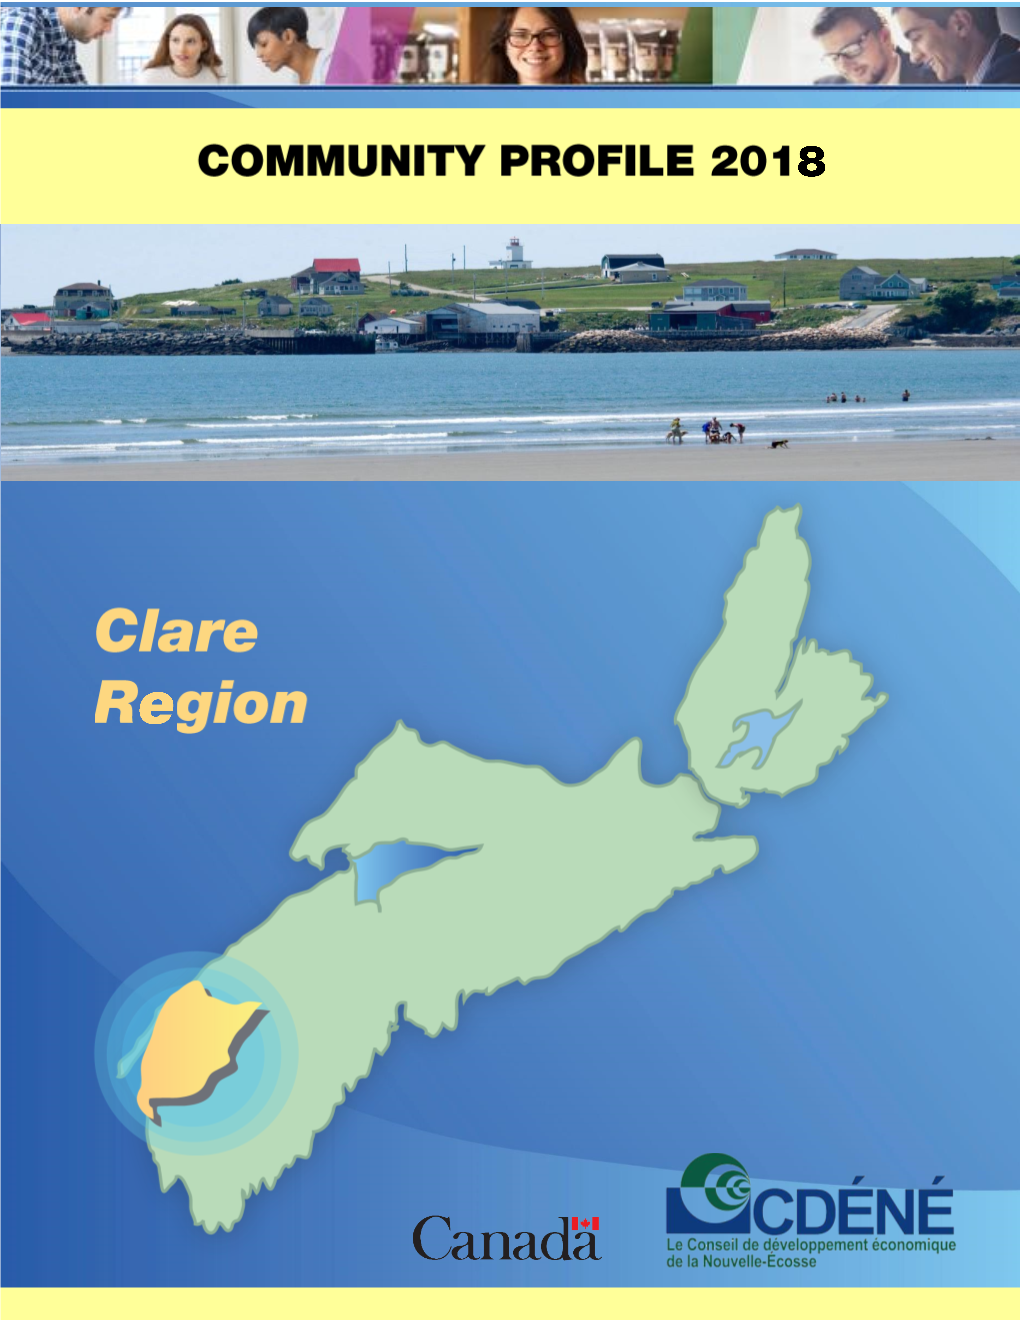 Clare Region